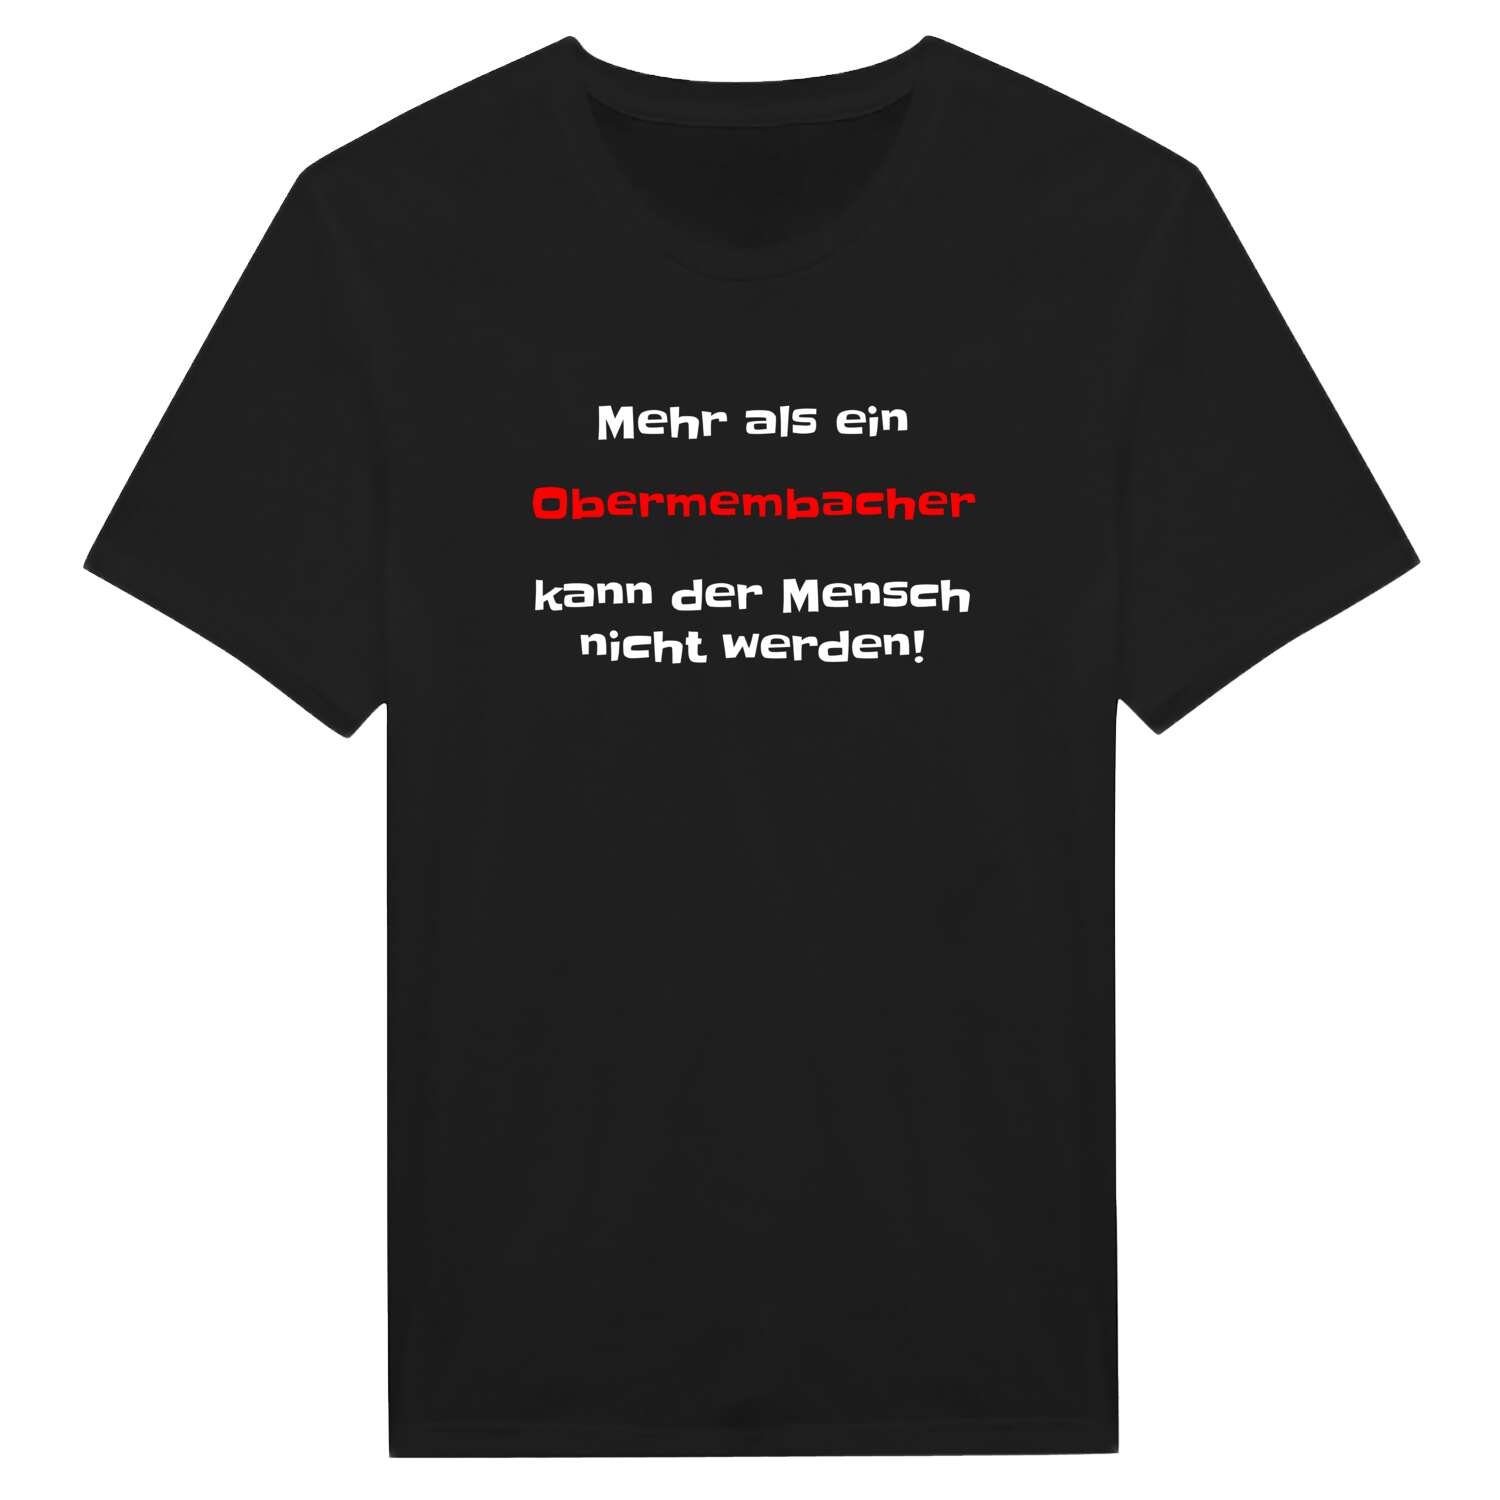 Obermembach T-Shirt »Mehr als ein«